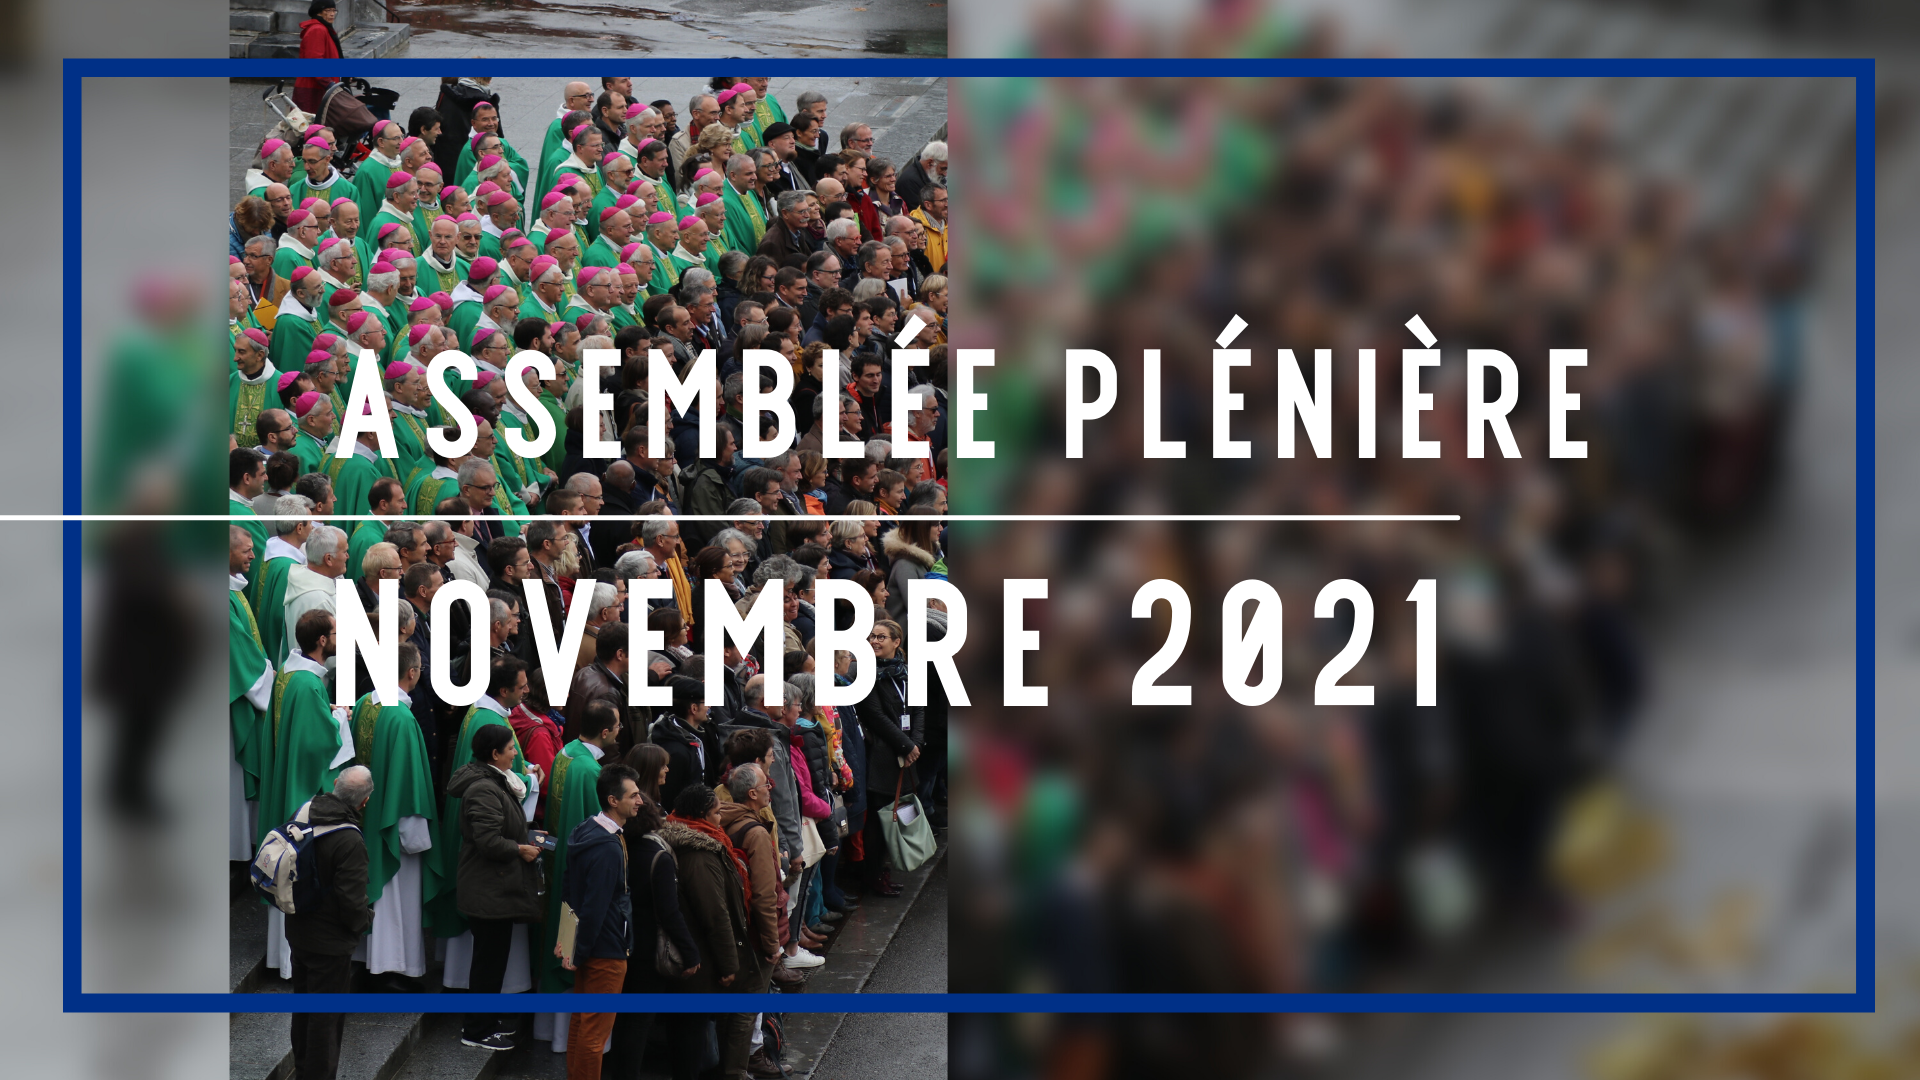 Assemblée plénière des Évêques à Lourdes - Nov 2021